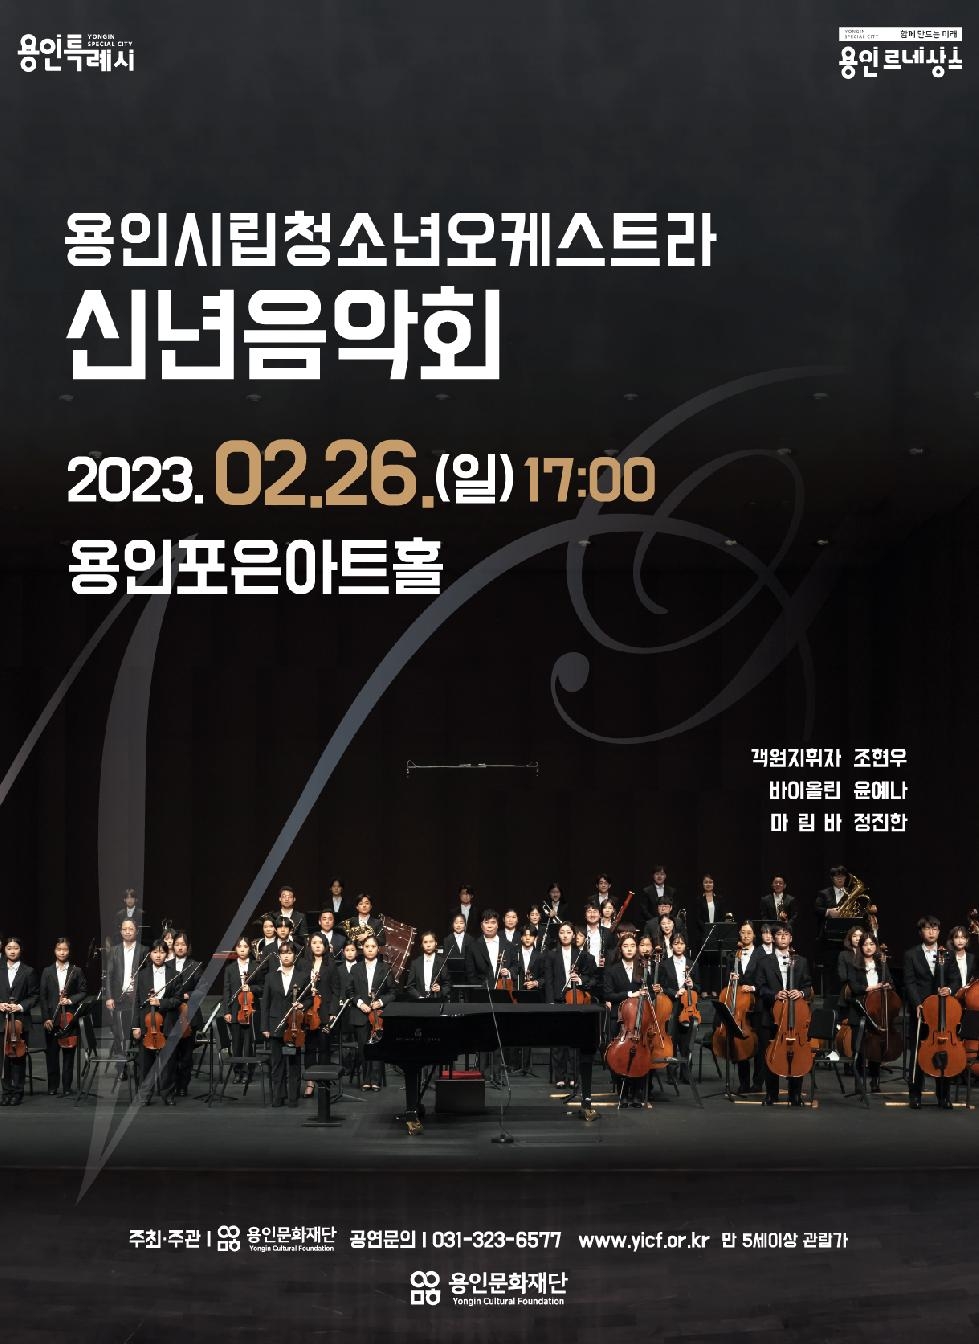 용인시립청소년오케스트라  2023 신년음악회 개최